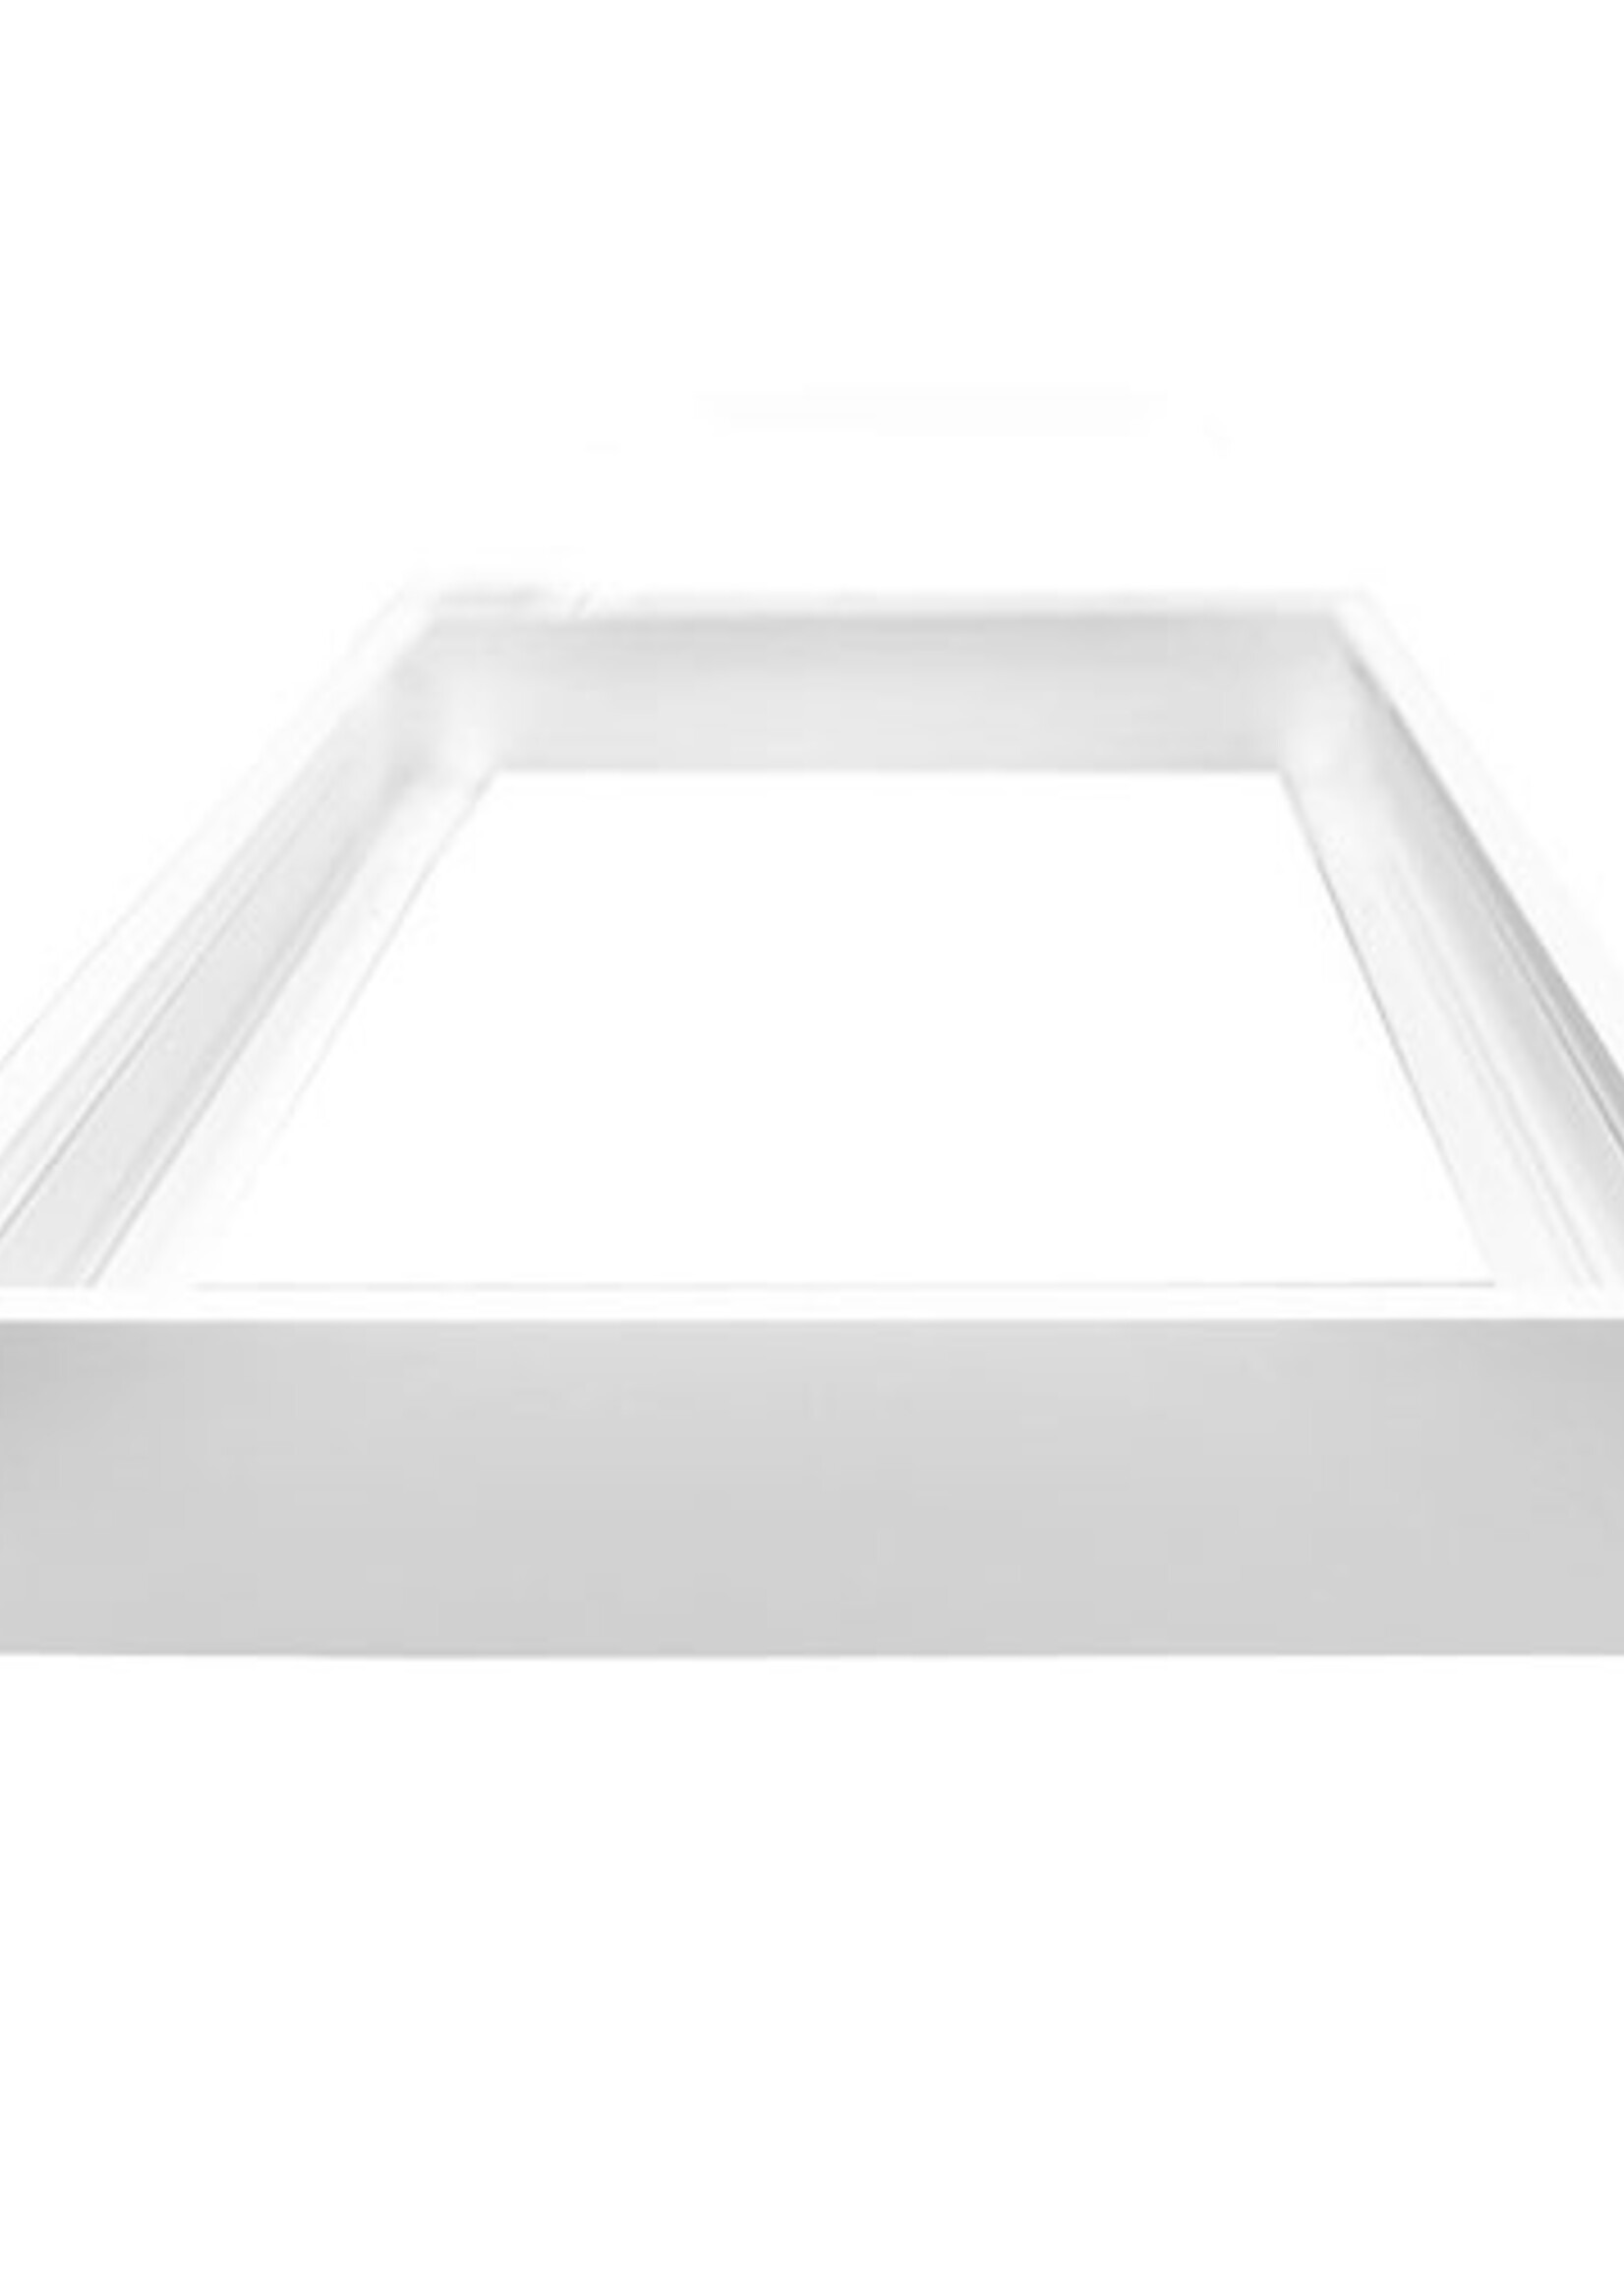 LEDWINKEL-Online LED Paneel opbouw frame 60x60cm wit